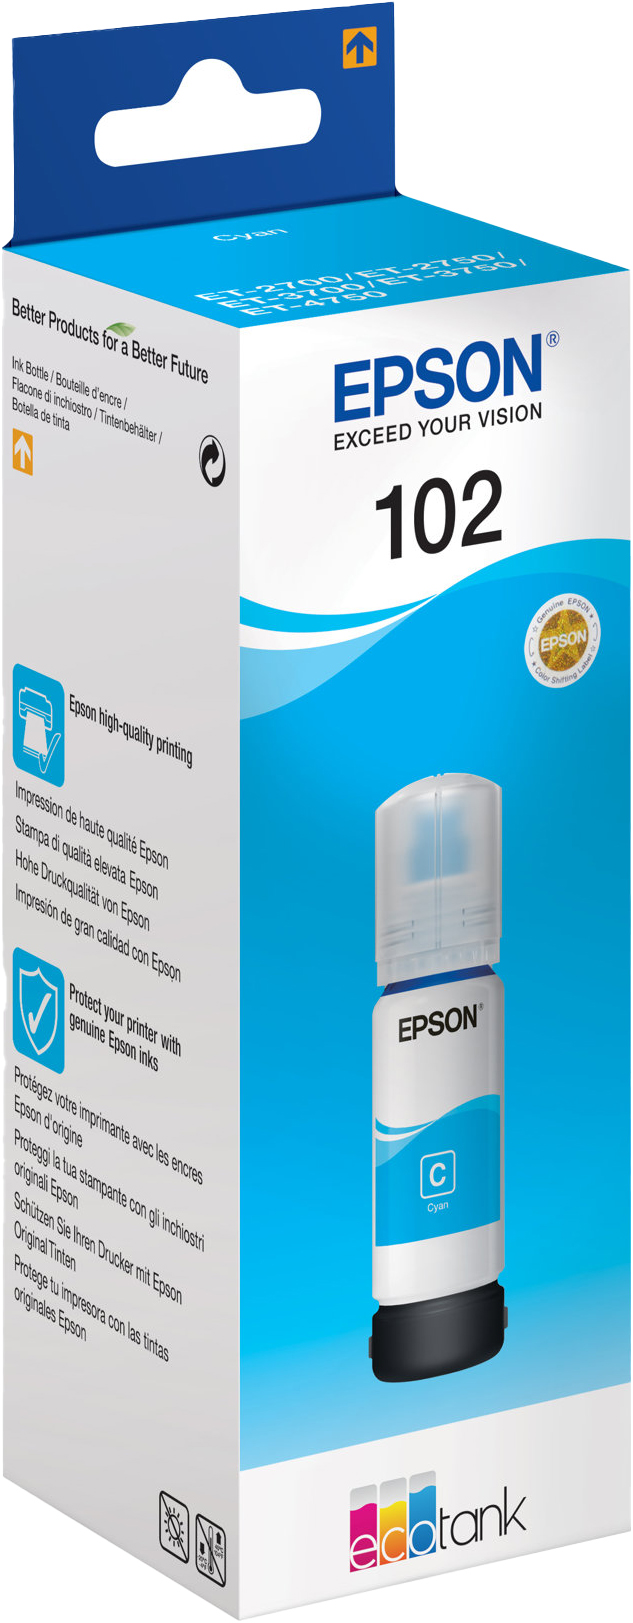 Epson 102 réservoir d'encre noire (d'origine) Epson